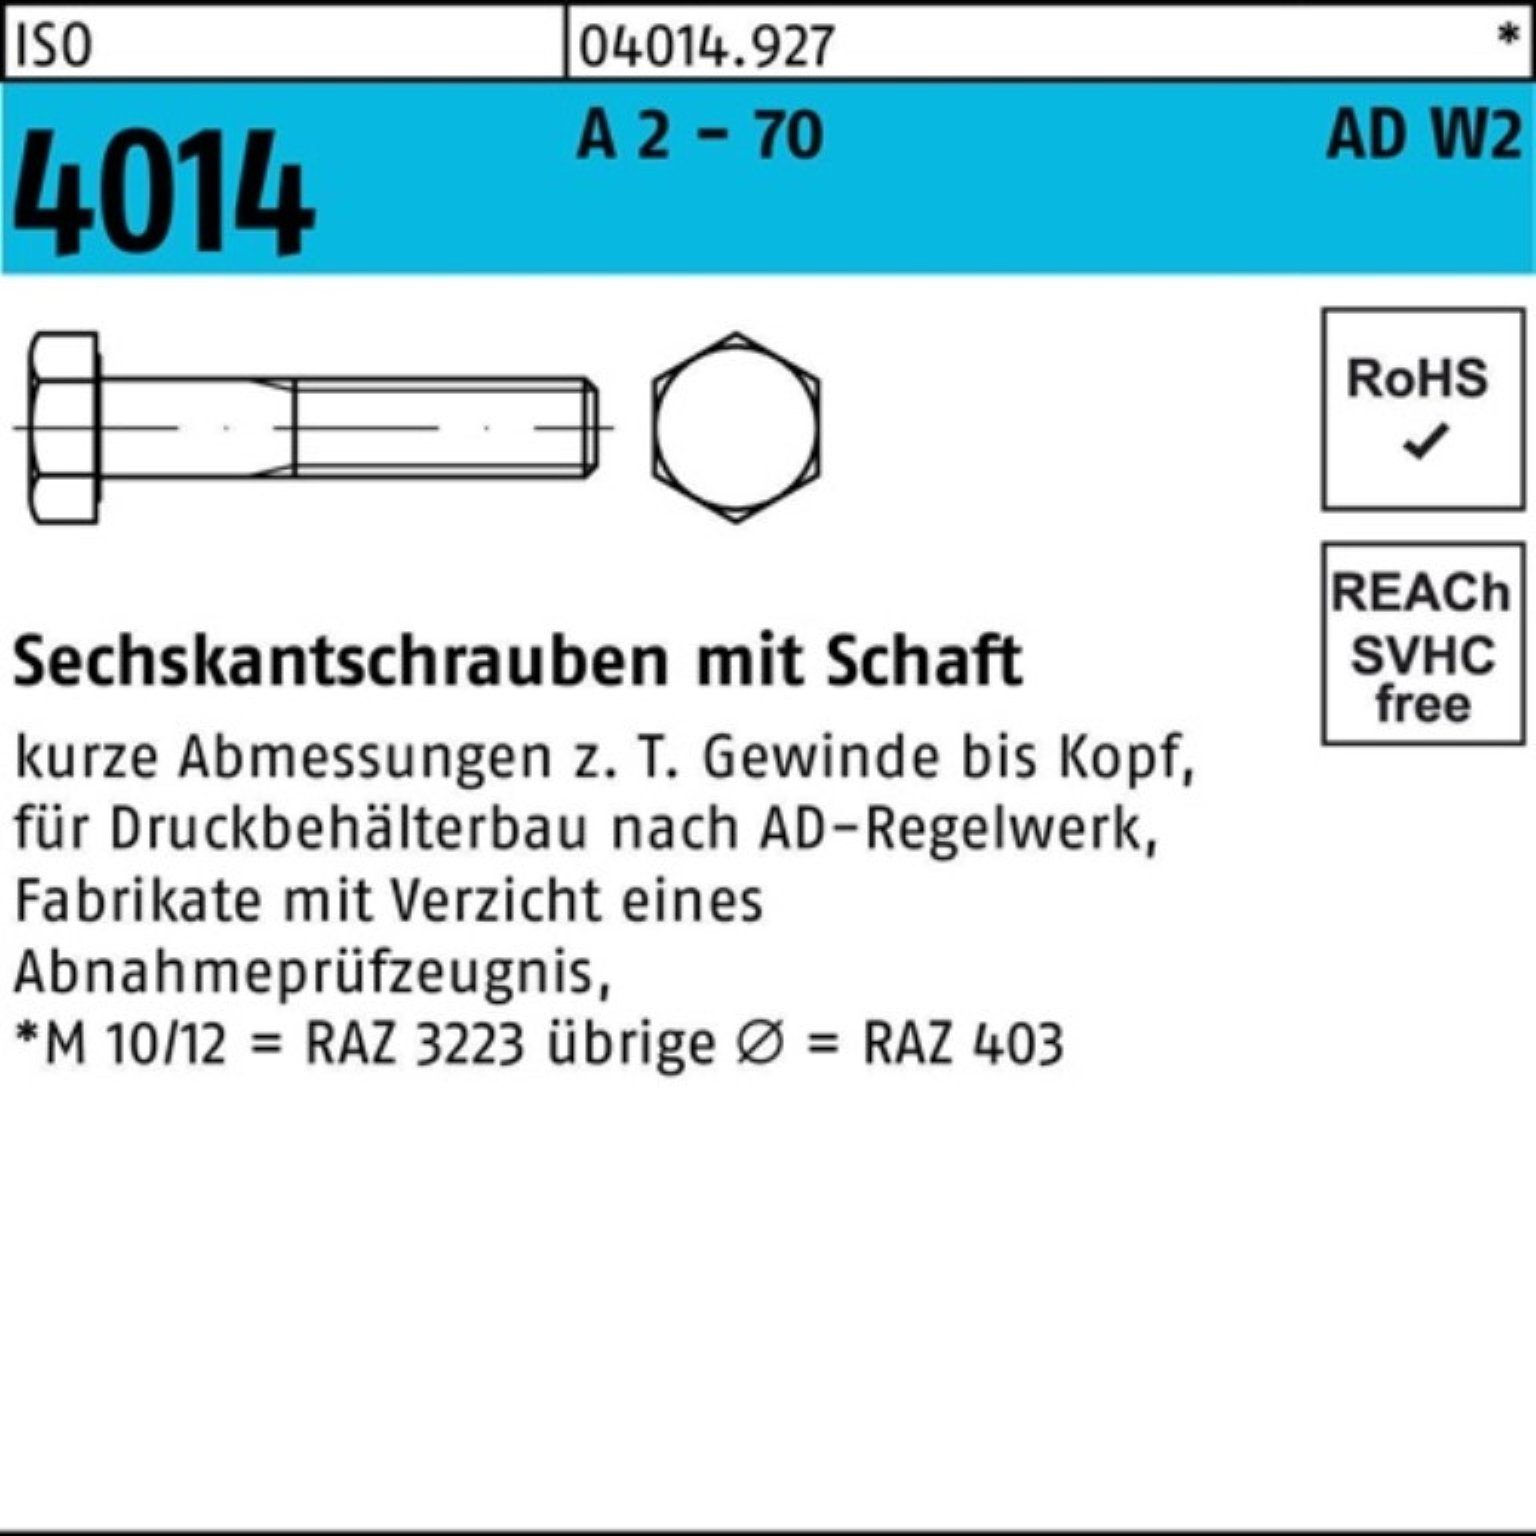 Bufab Sechskantschraube 100er 70 Schaft 4014 A - 2 Pack M12x 150 ISO 2 Sechskantschraube AD-W2